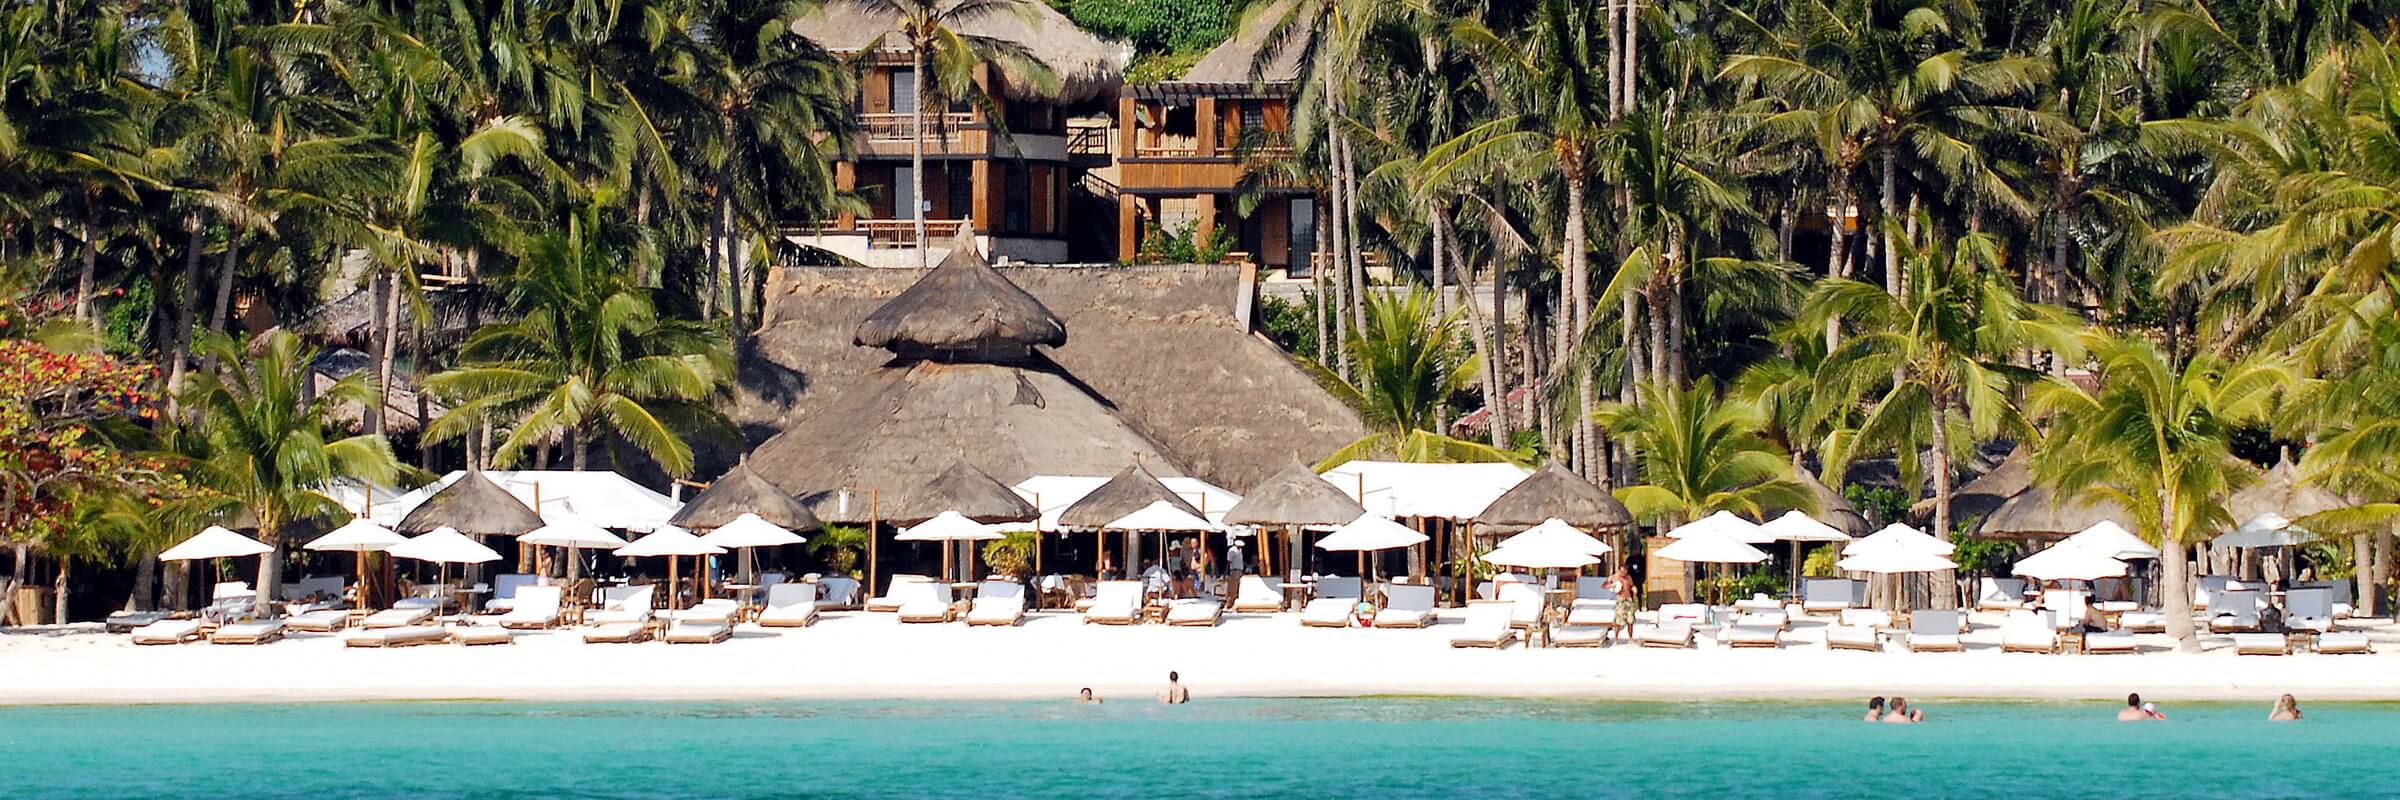 Die einladende Strandanlage des Firdays auf Boracay, Philippinen mit dem Hotelensemble im Hintergrund